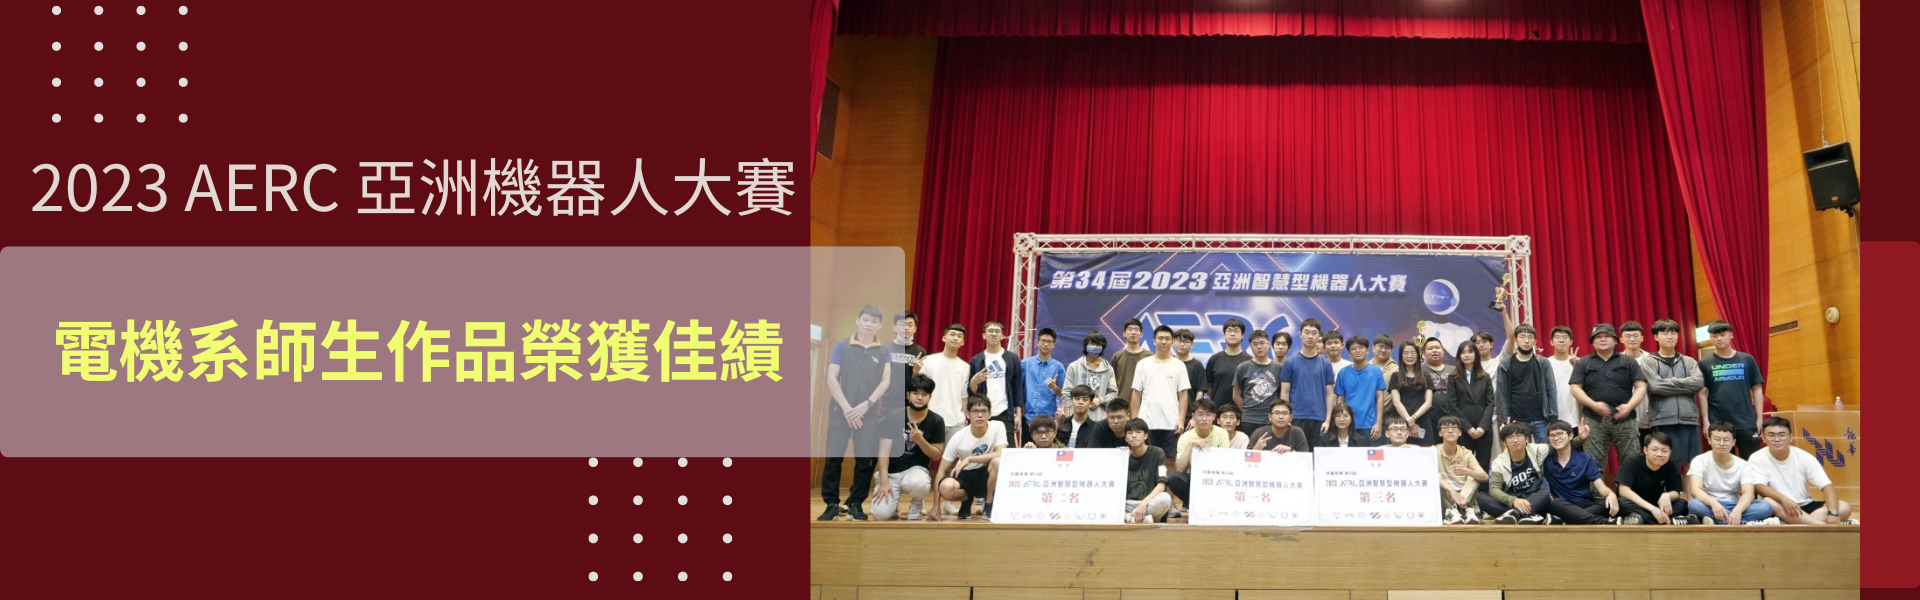 2023第34屆AERC 亞洲智慧型機器人大賽，龍華學子奪34獎項、104人次獲獎傲視群雄。(大合影)